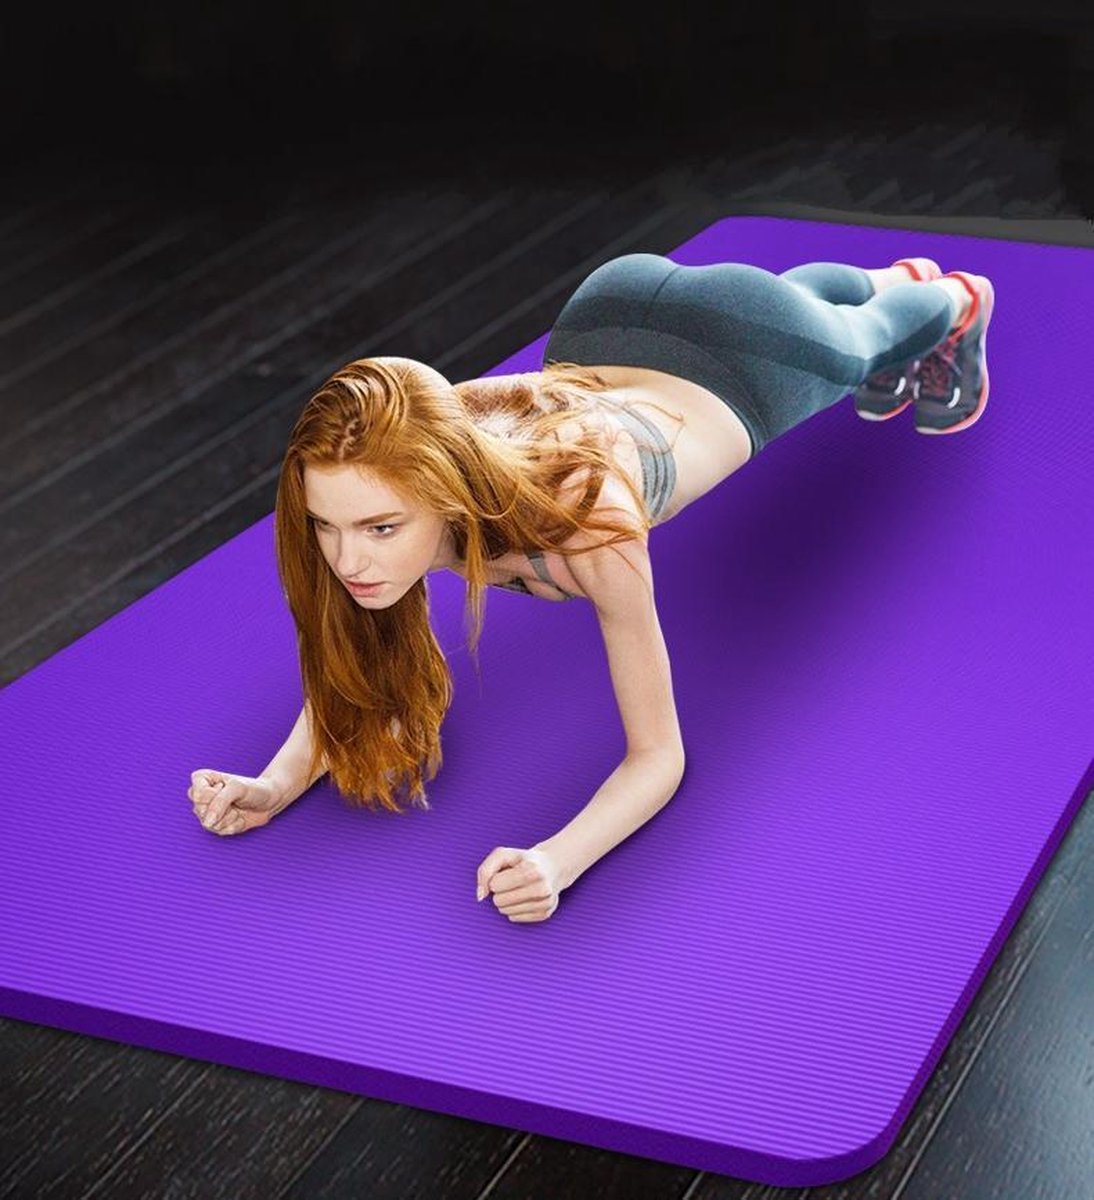 Pro-Care Yoga/Fitnessmat - Met Anti Slip Profiel - 183x61x1cm - Met Draagriem en Draagtas - Paars